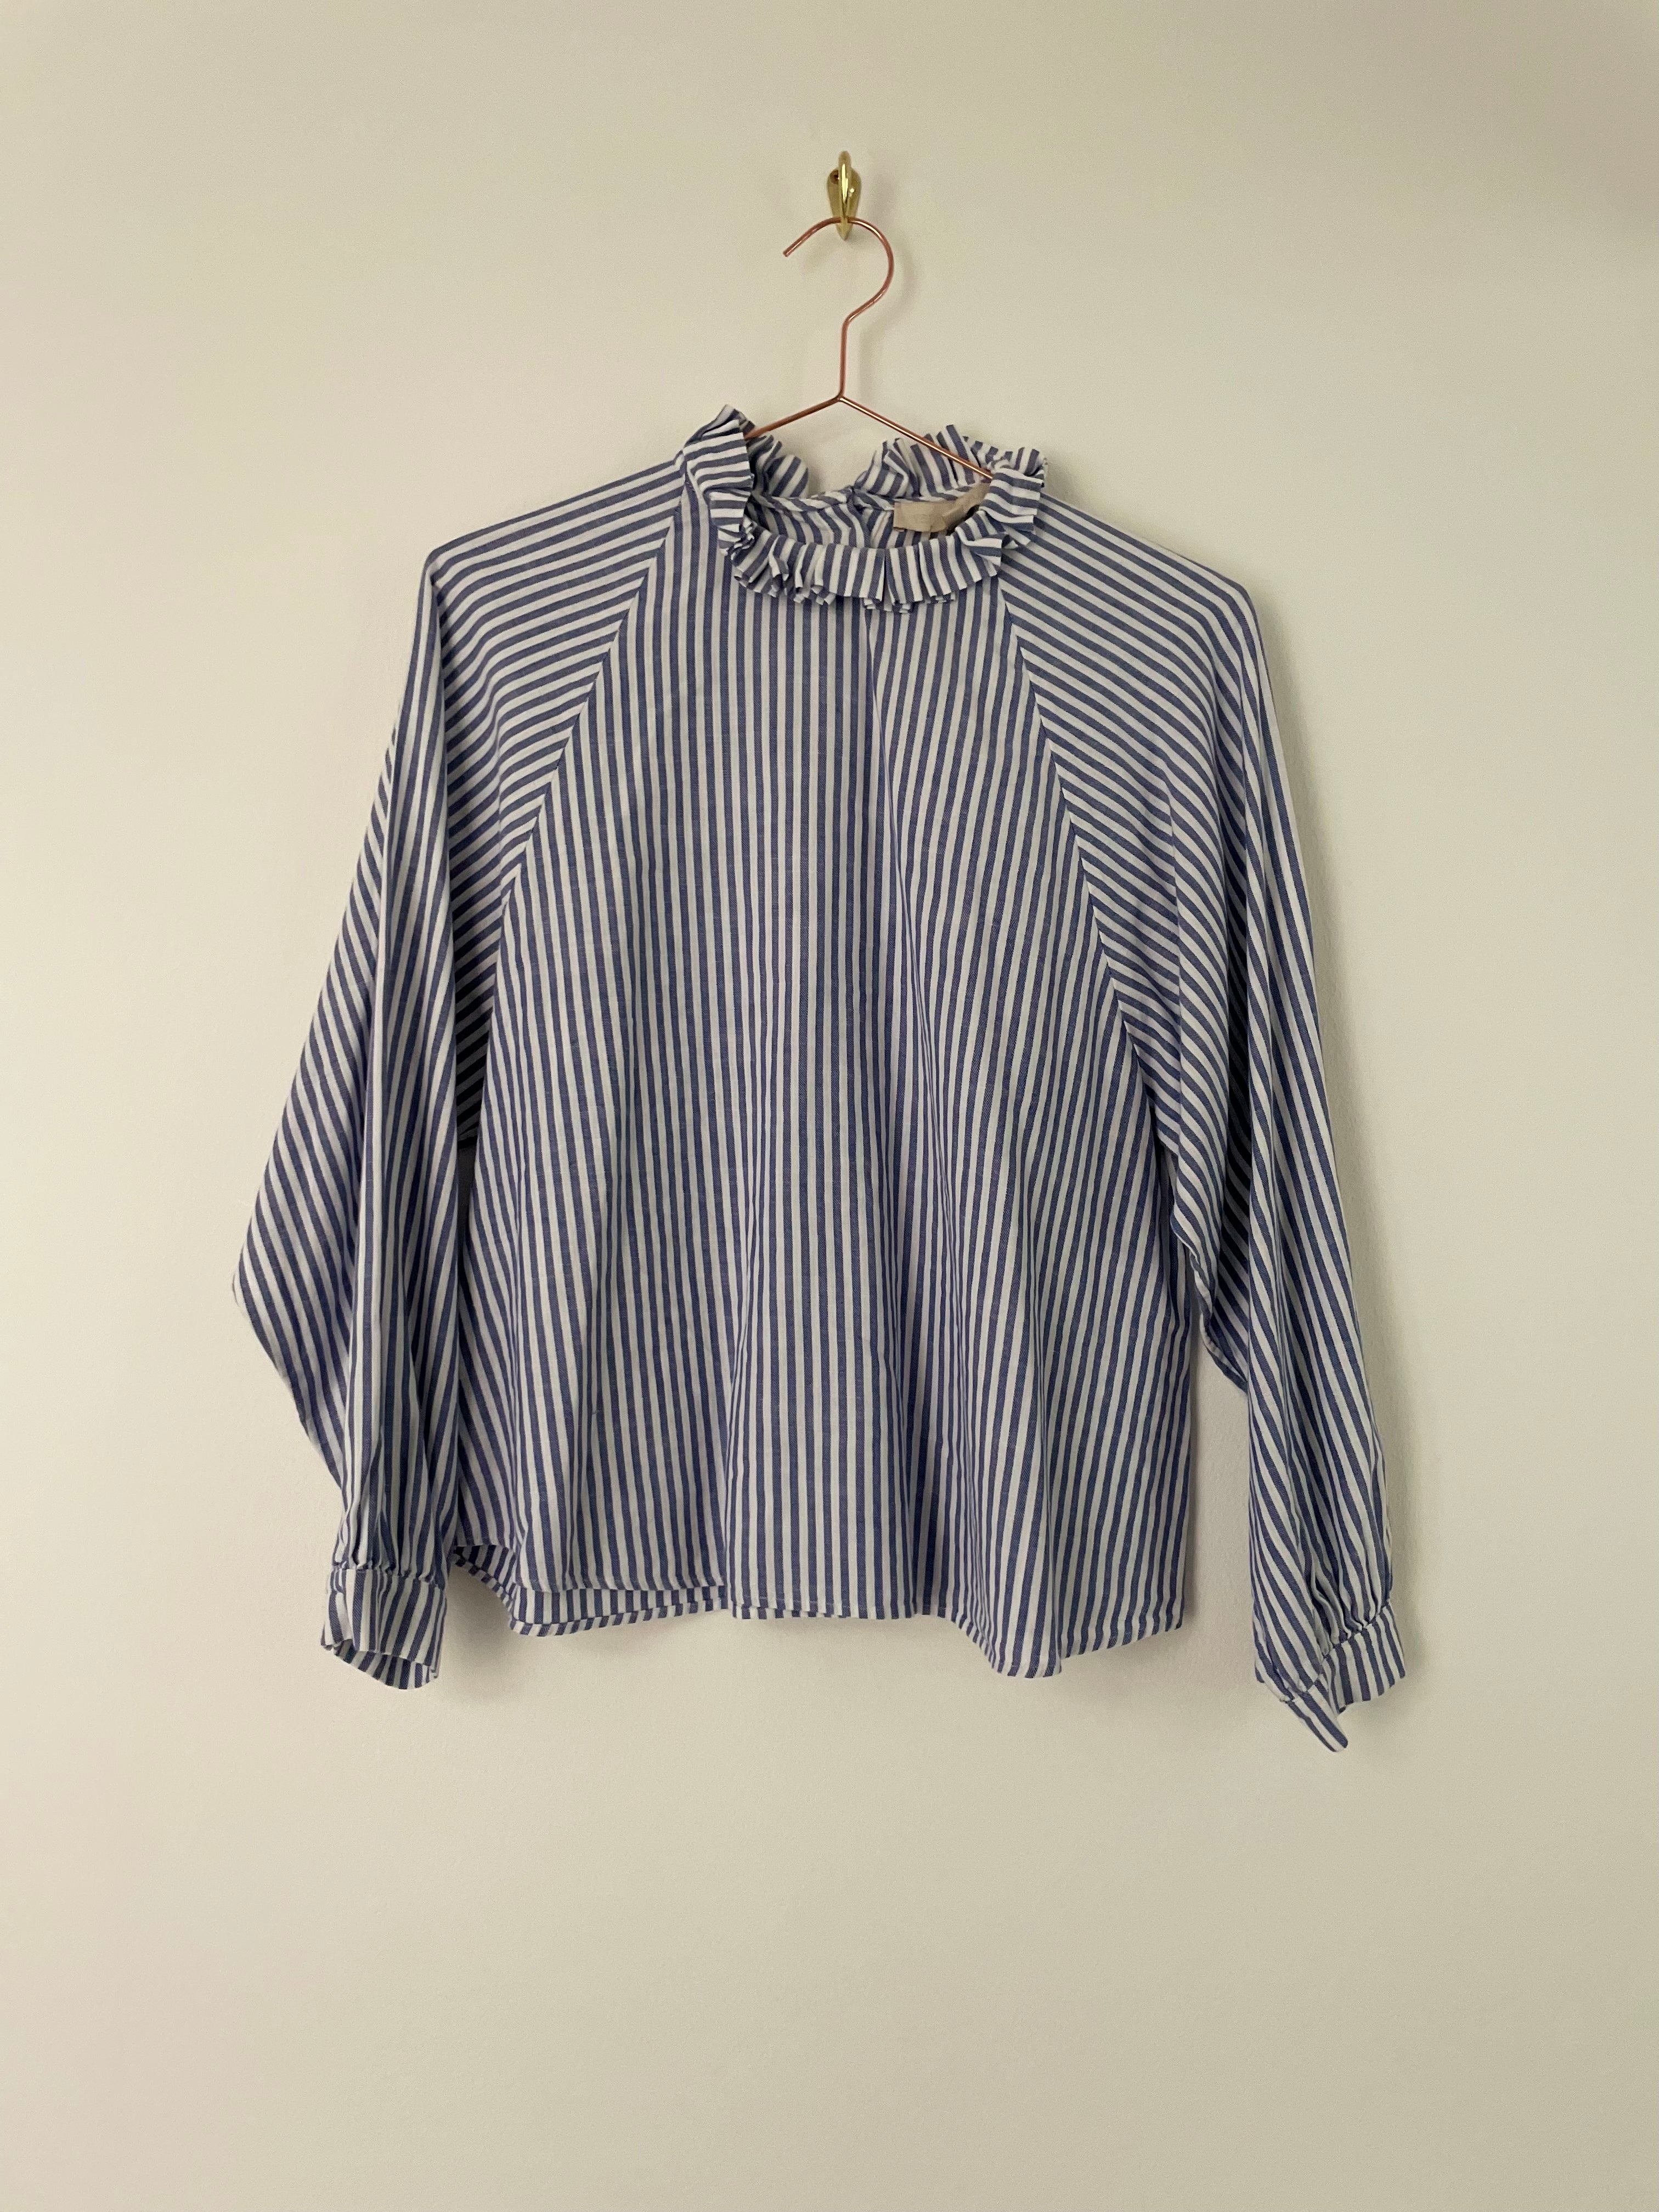 Blue stripes blouse - VANESSA BRUNO - S